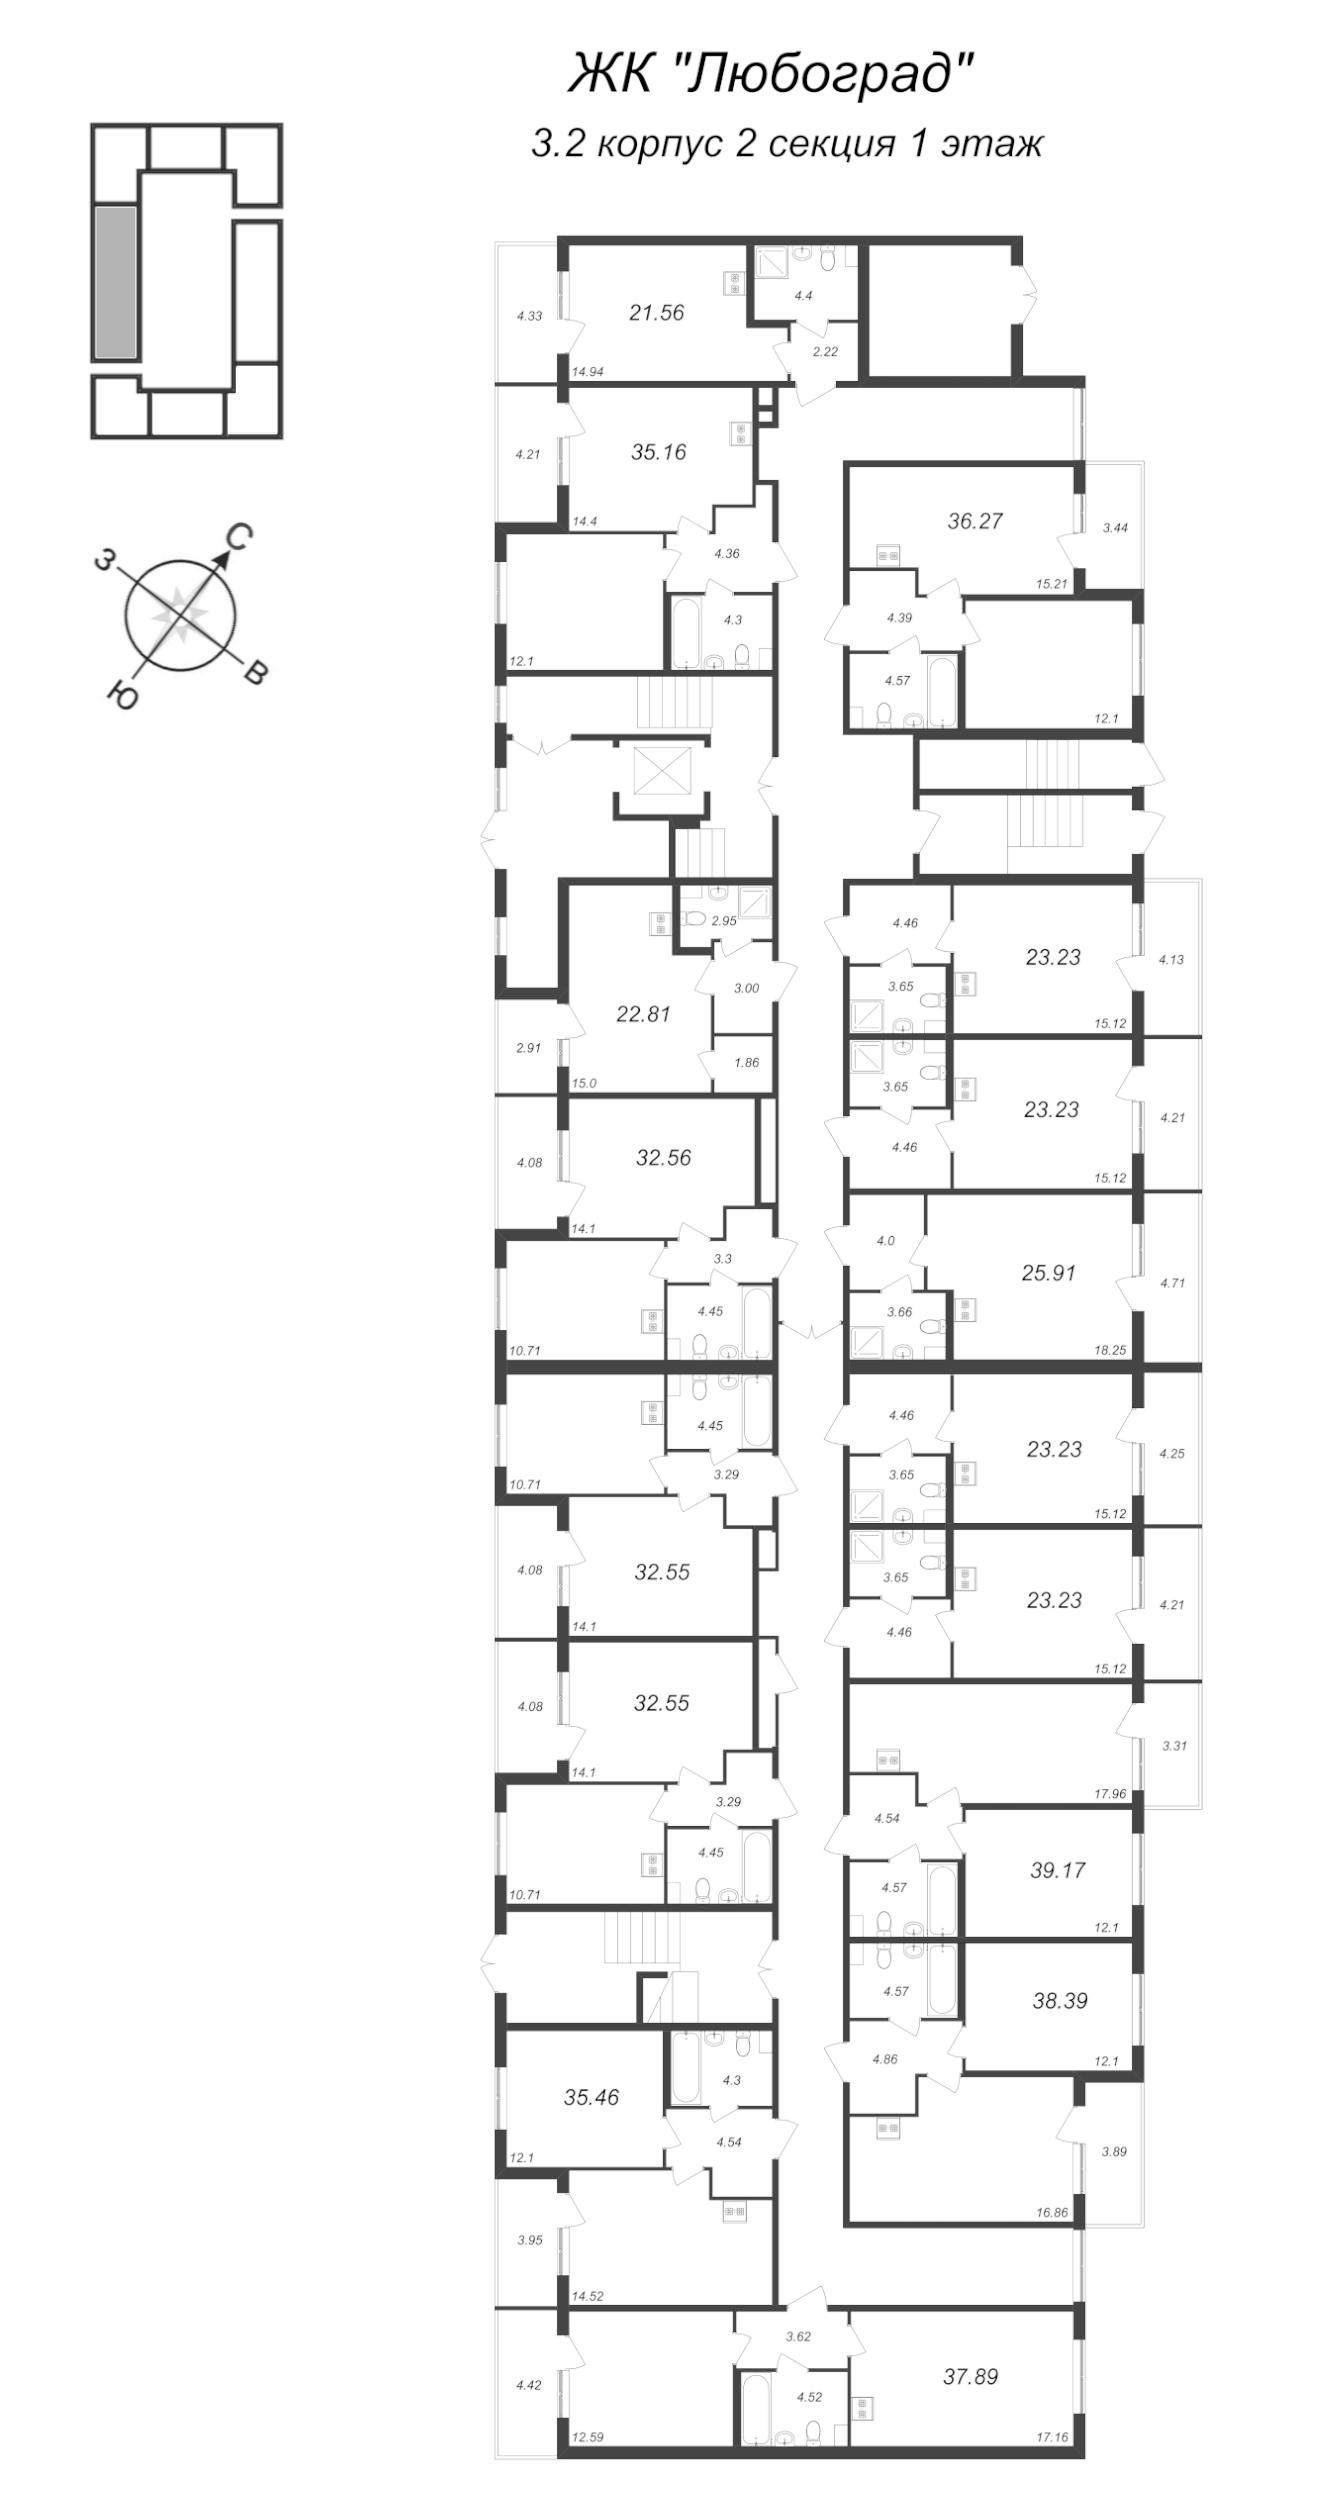 2-комнатная (Евро) квартира, 36.27 м² в ЖК "Любоград" - планировка этажа